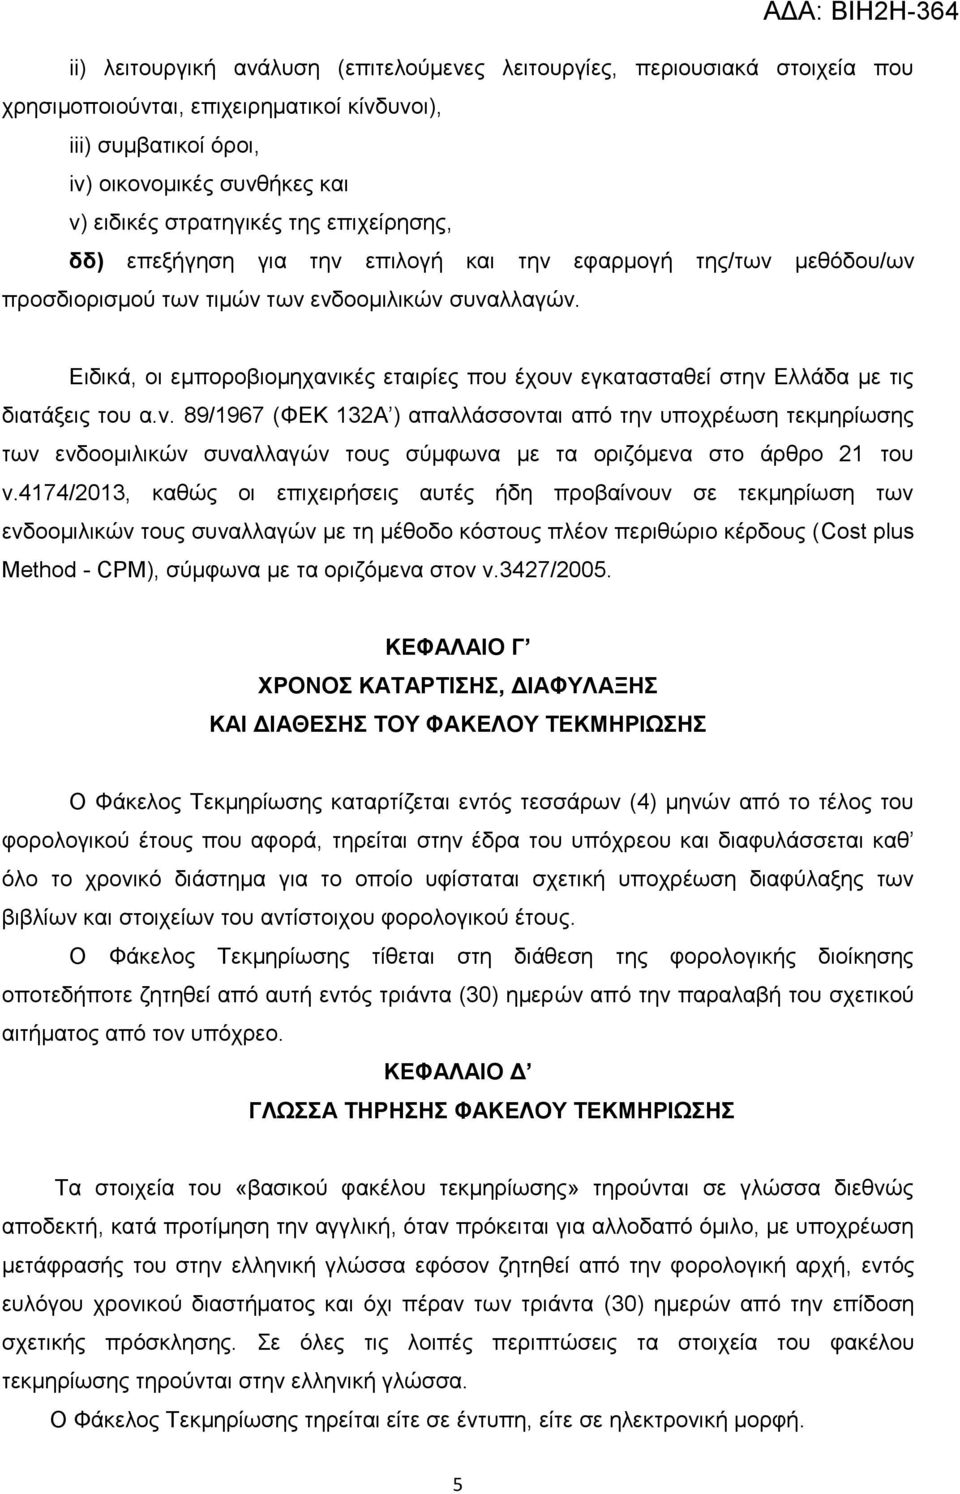 Ειδικά, οι εμποροβιομηχανικές εταιρίες που έχουν εγκατασταθεί στην Ελλάδα με τις διατάξεις του α.ν. 89/1967 (ΦΕΚ 132Α ) απαλλάσσονται από την υποχρέωση τεκμηρίωσης των ενδοομιλικών συναλλαγών τους σύμφωνα με τα οριζόμενα στο άρθρο 21 του ν.